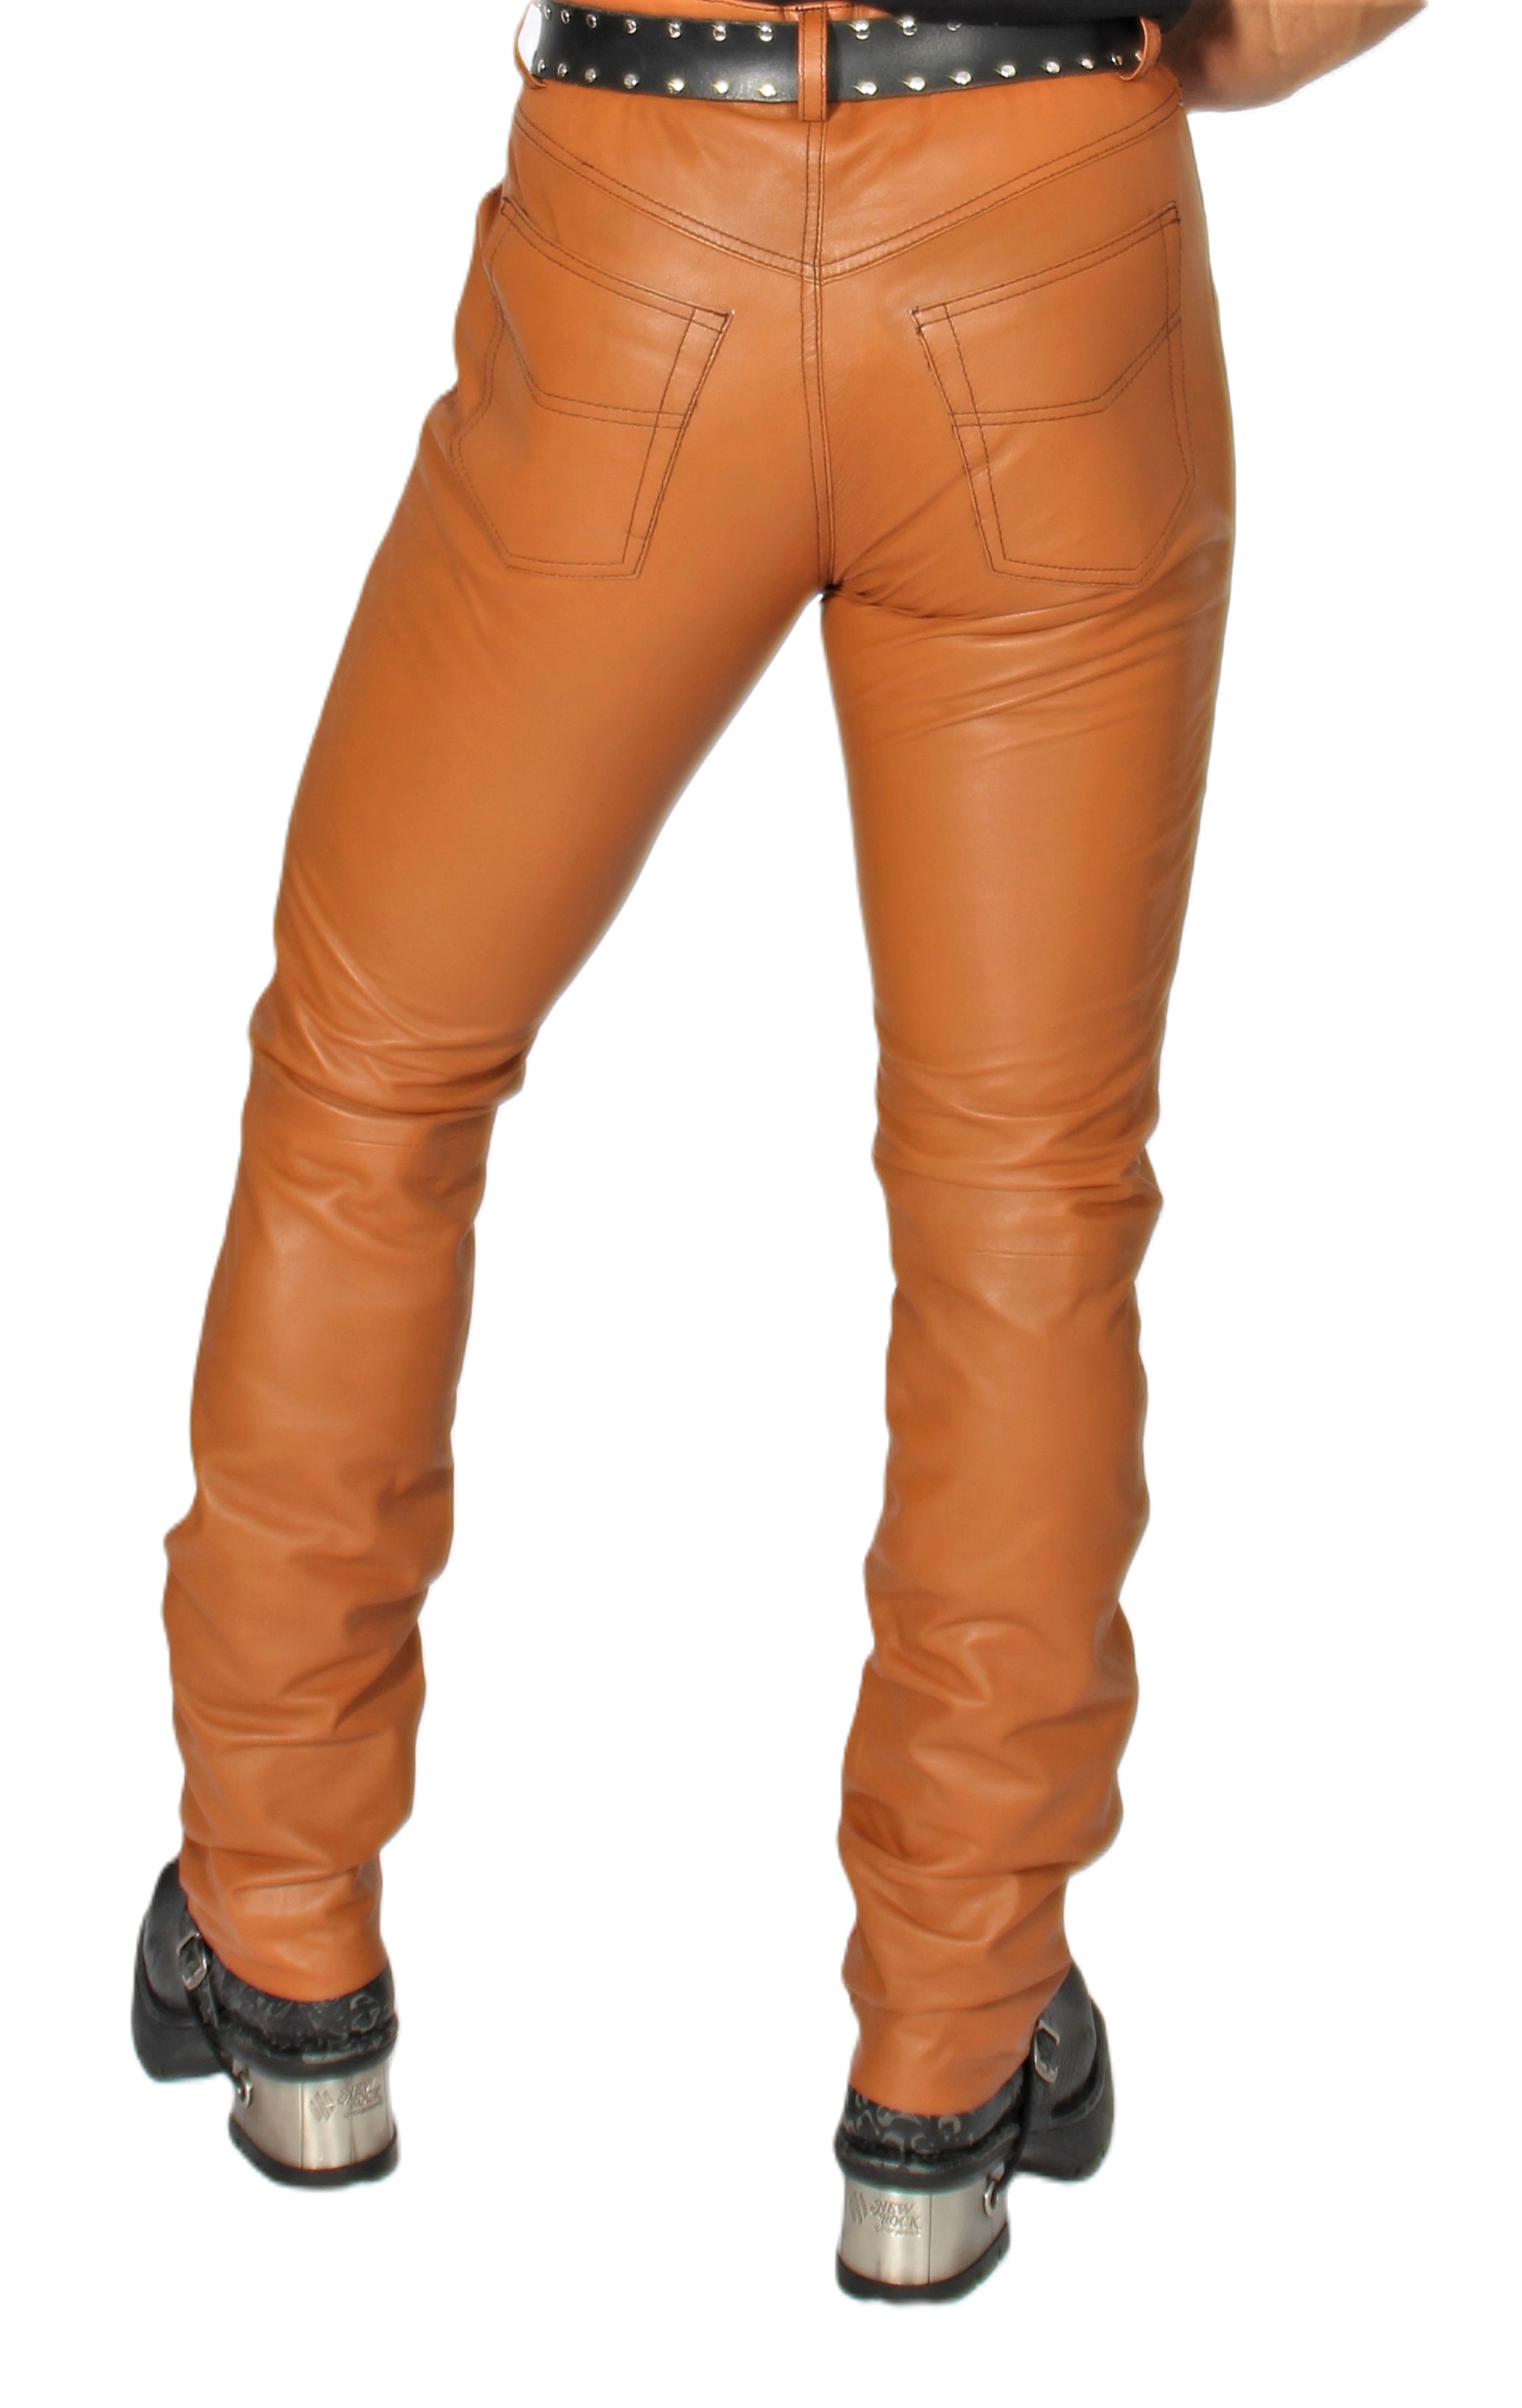 Pantalón de cuero-tipo Vaquero-en cuero AUTENTICO color coñac